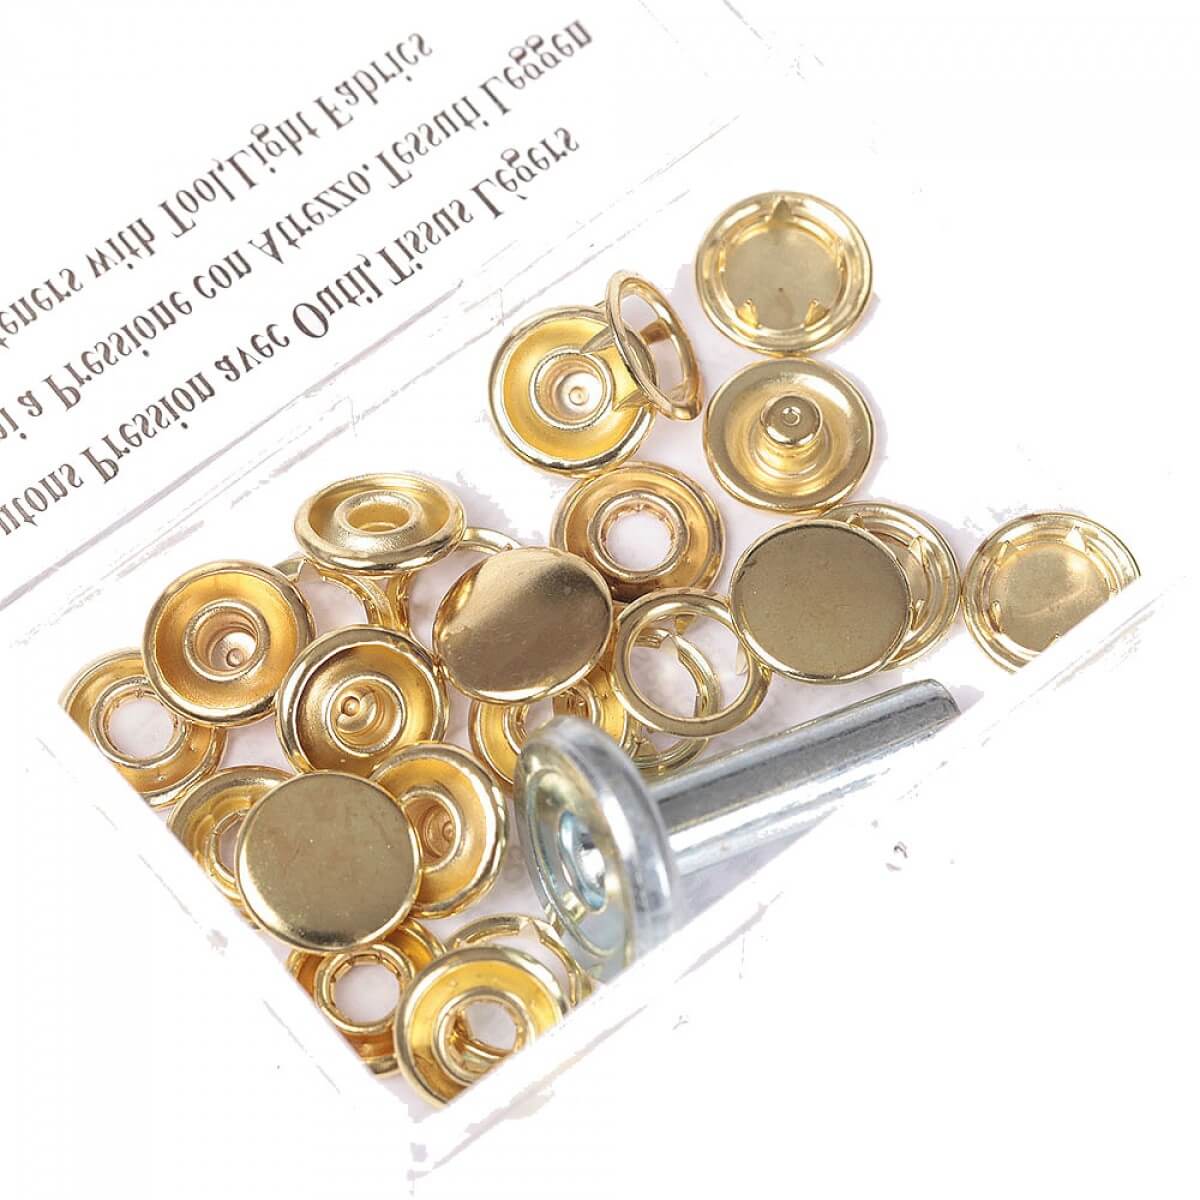 7 boutons pression en métal rouge et doré - 14mm - ab1141 - Un grand marché